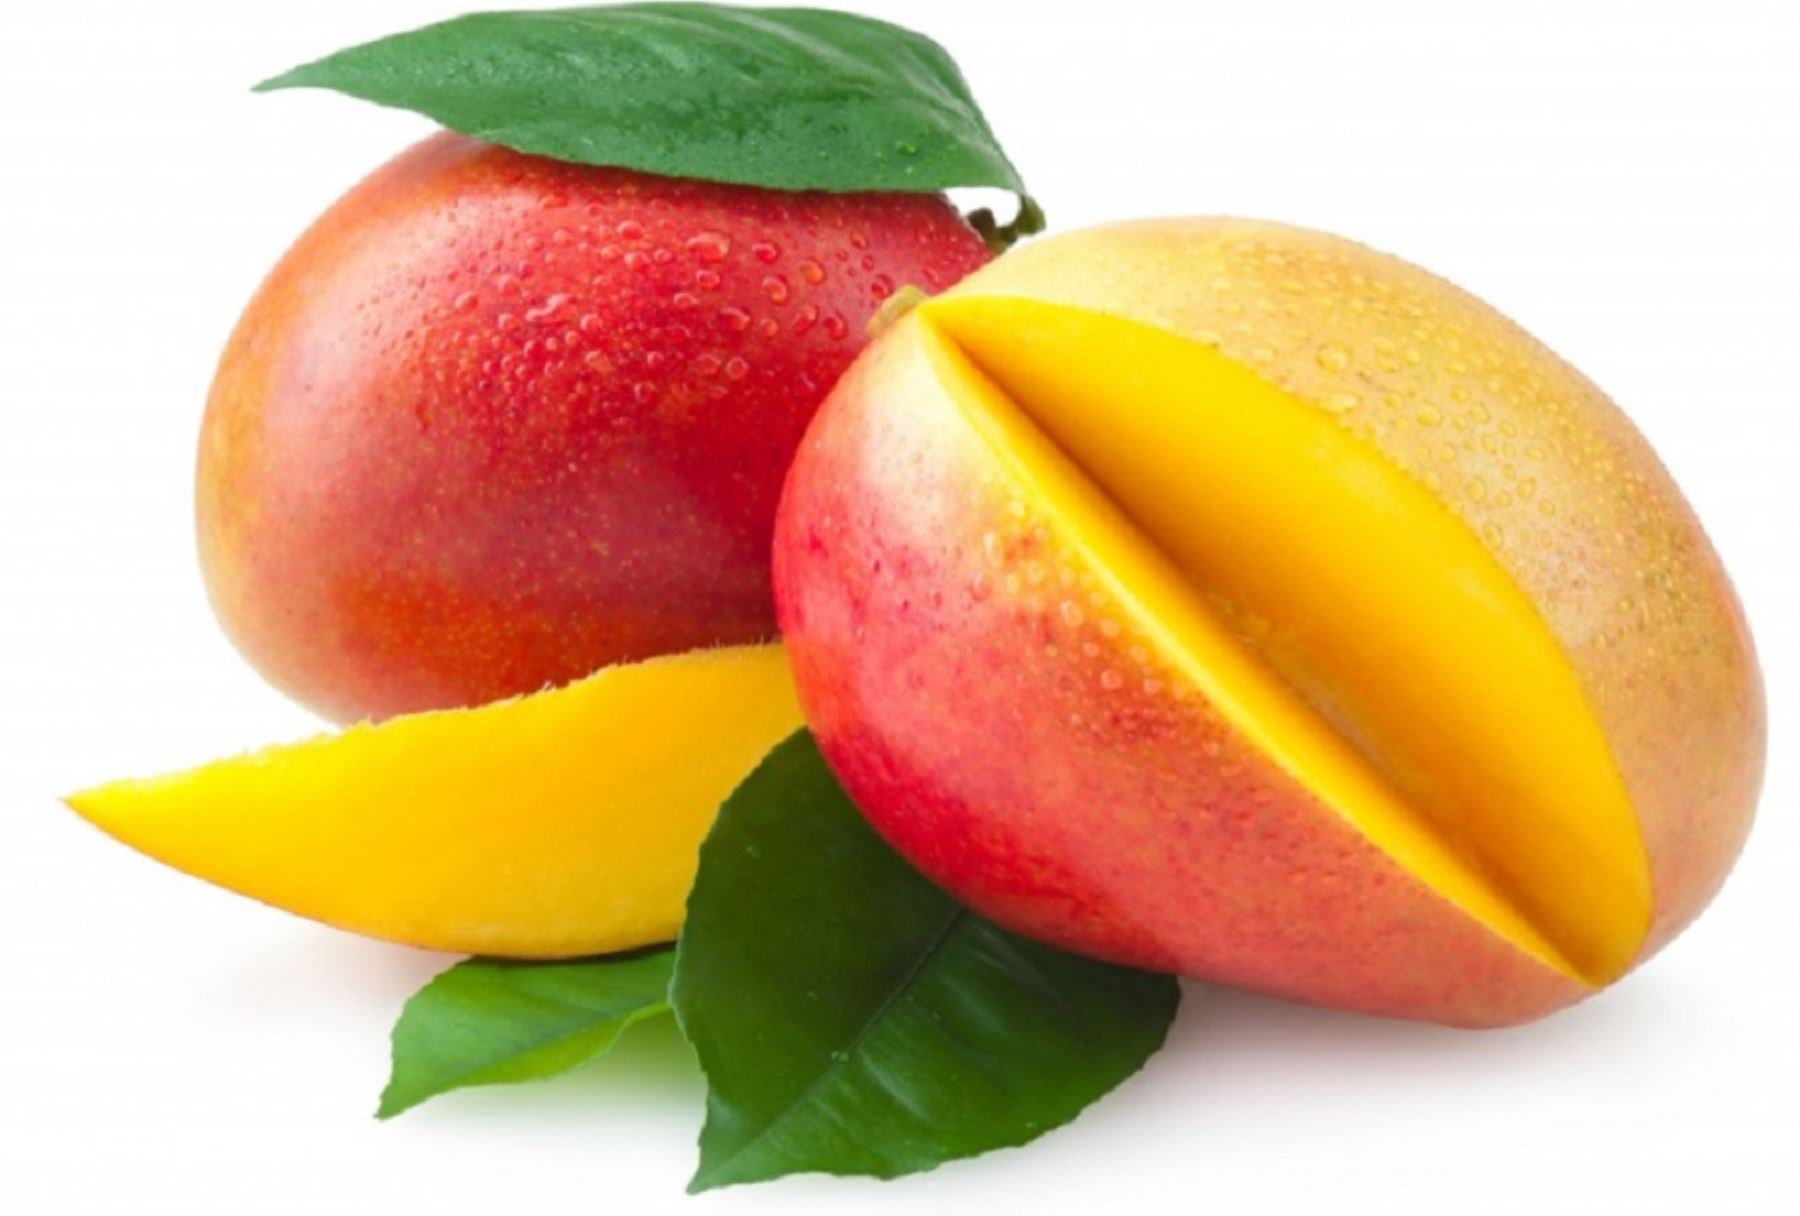 Ortopedista Carmelo De Grazia// Incluye mango en tu dieta para prevenir el cáncer y mejorar tu salud digestiva